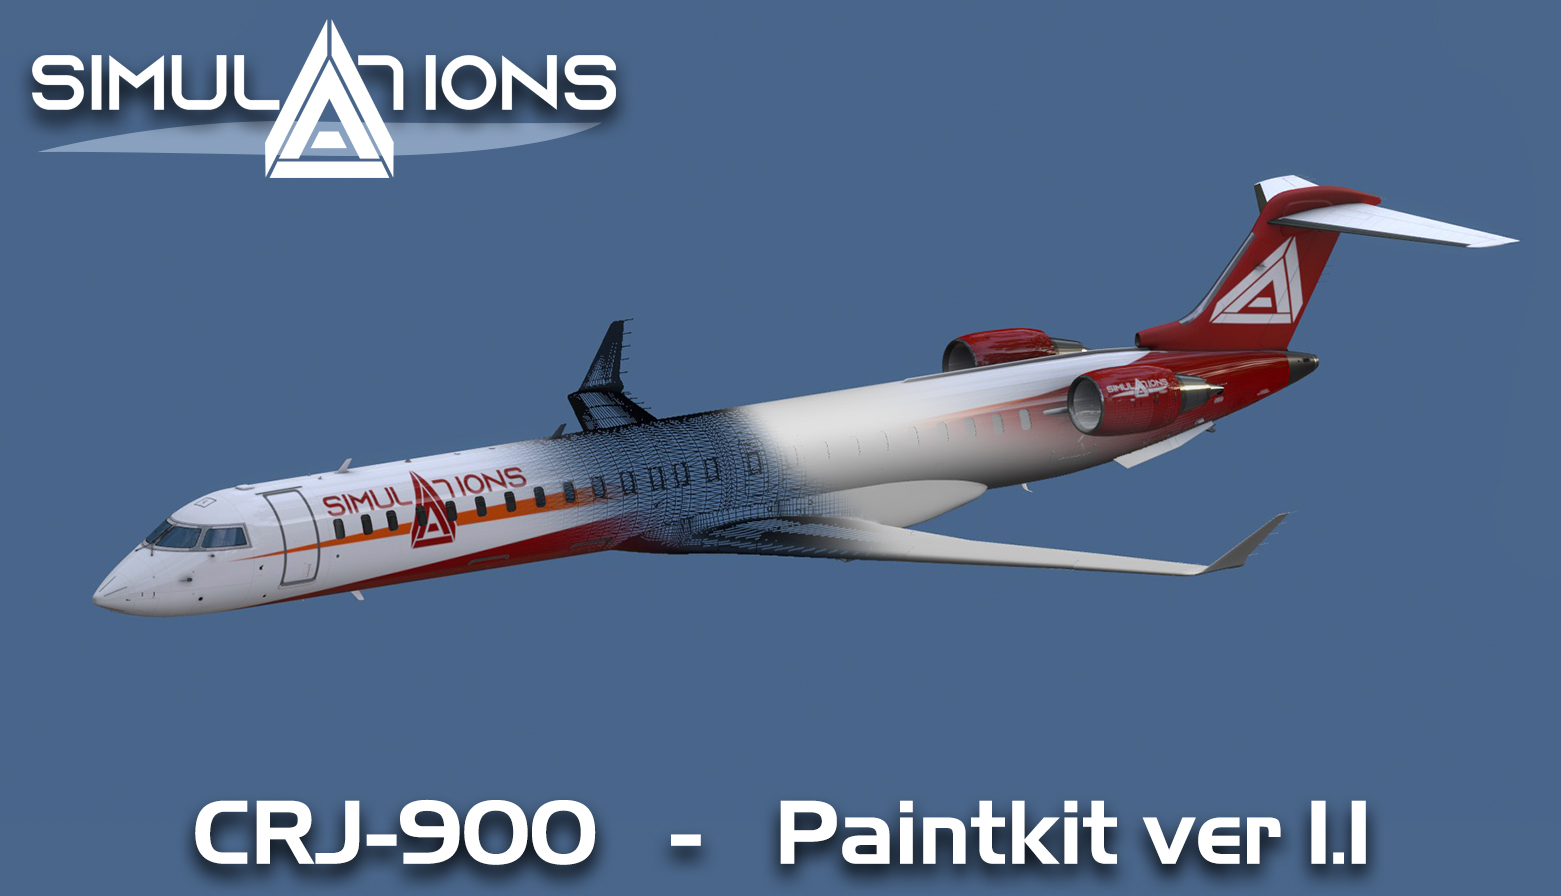 CRJ-900 Paintkit Ver 1.1